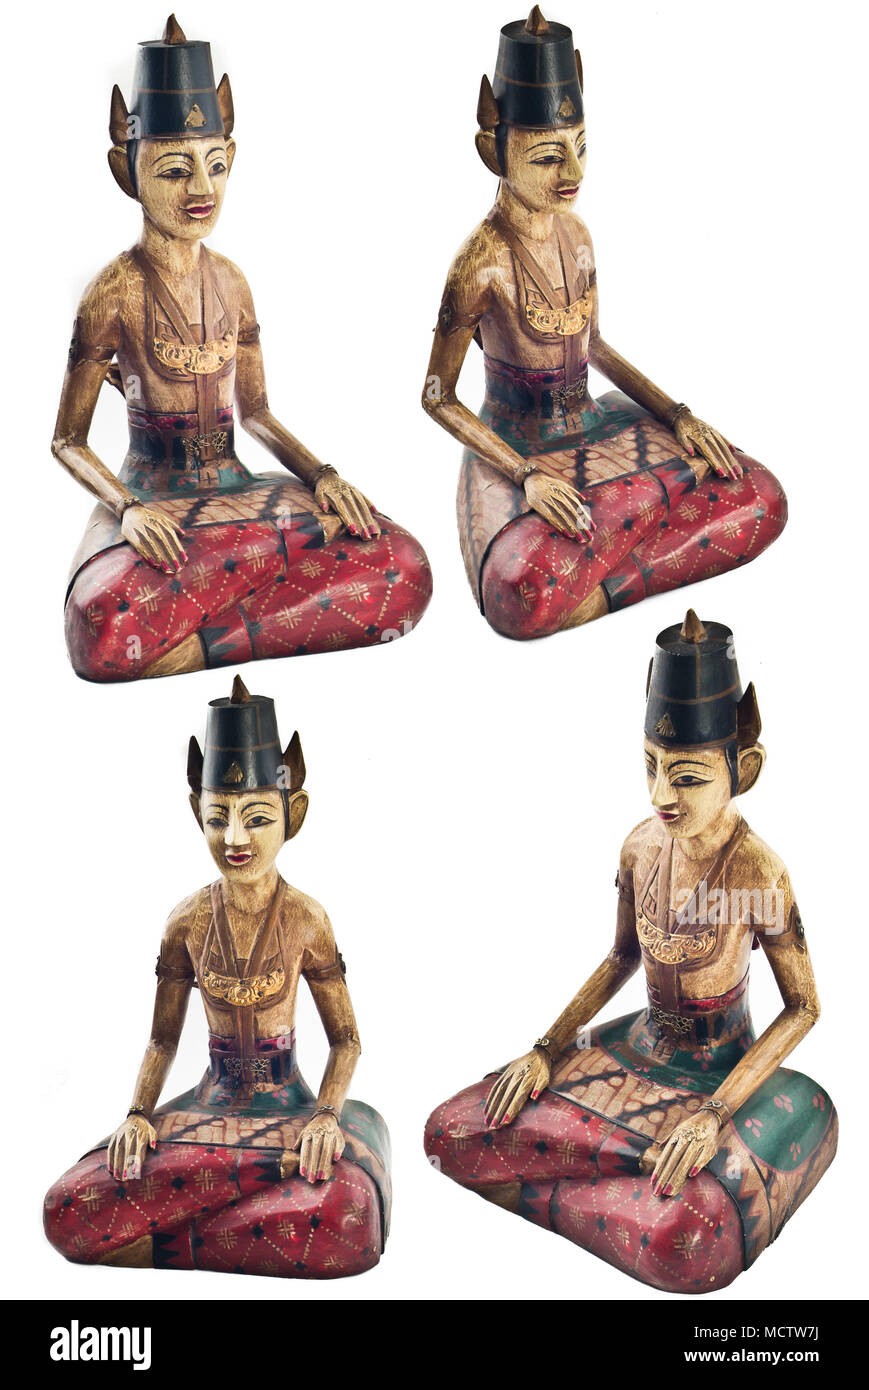 Bali en bois sculpture. Indonésie - Bali. Banque D'Images